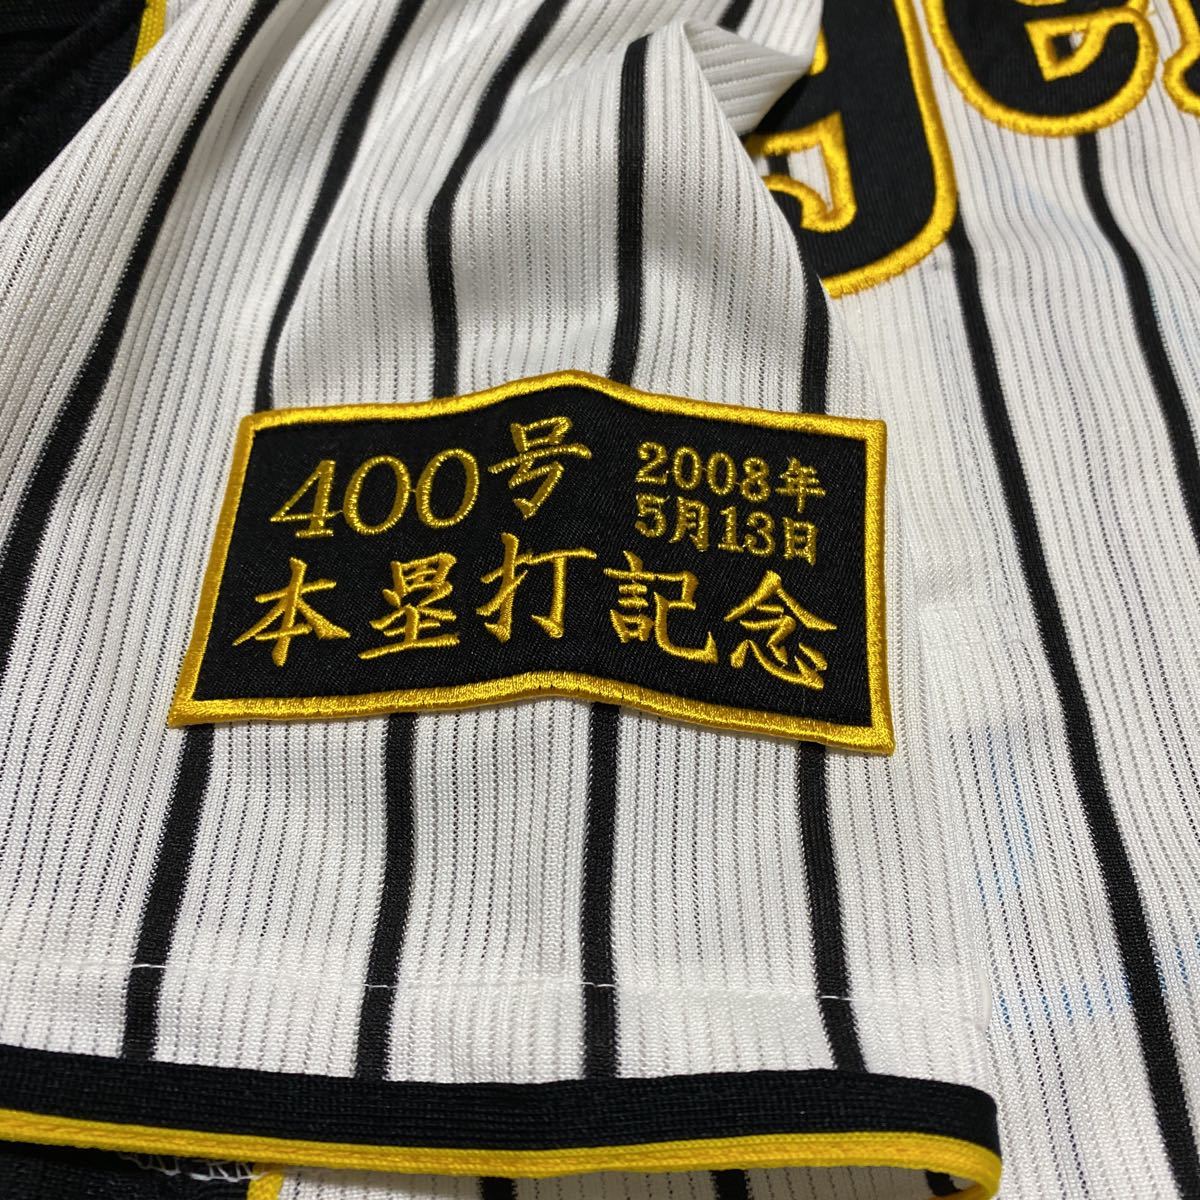 阪神タイガース 金本知憲 400号本塁打記念 ユニフォーム Mサイズ